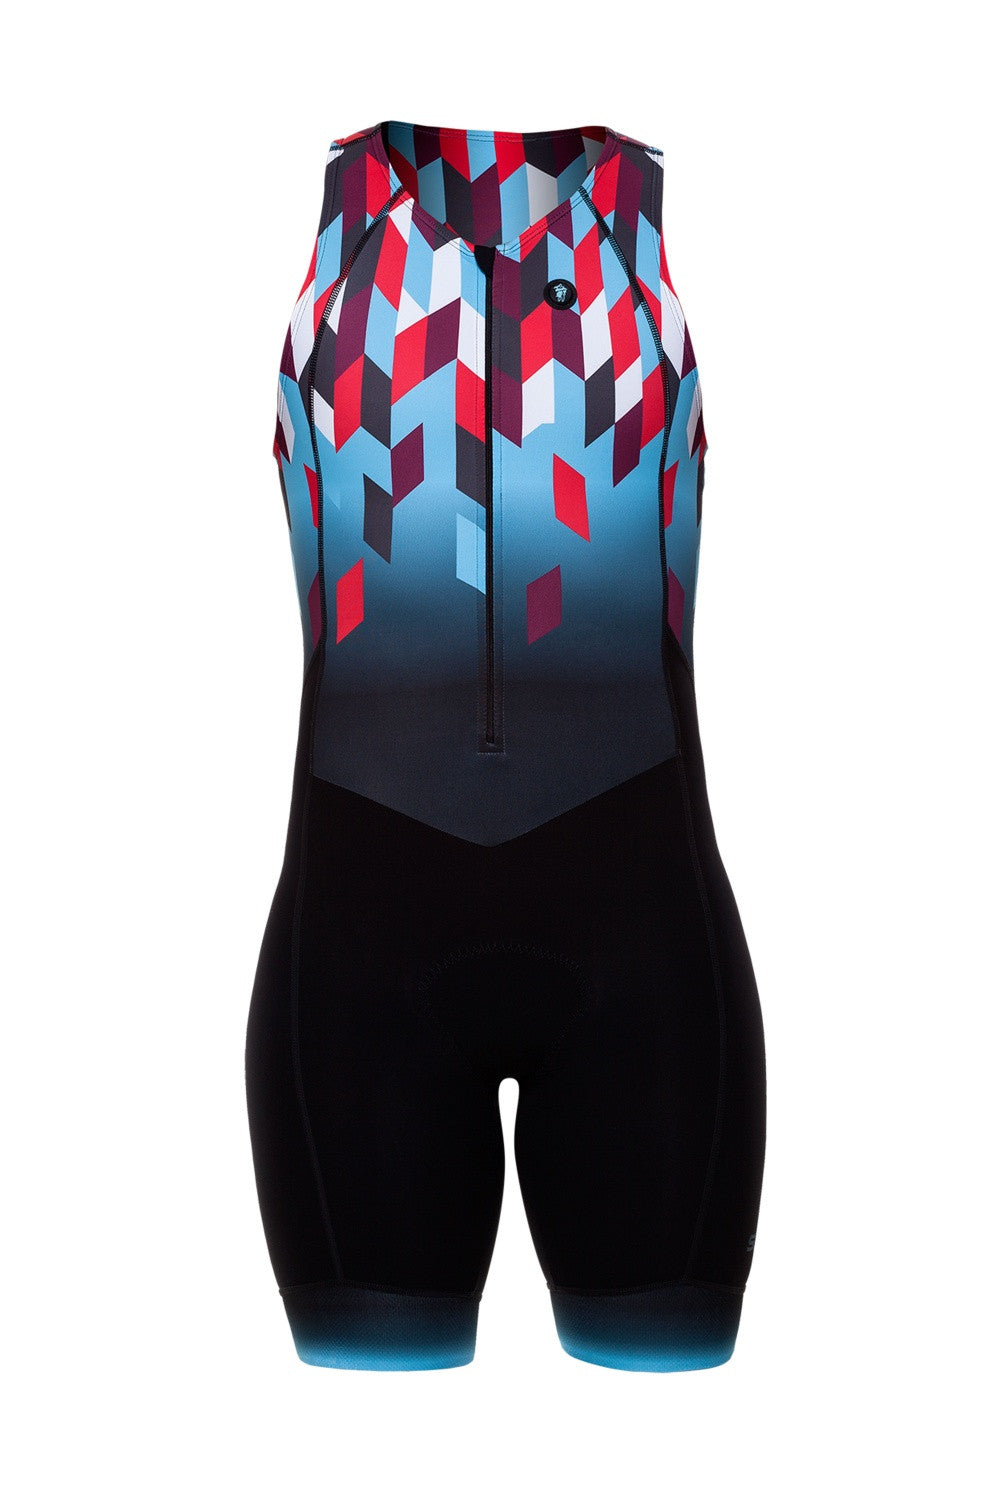 ES'17 - Niza - Triathlon Skinsuit. Men